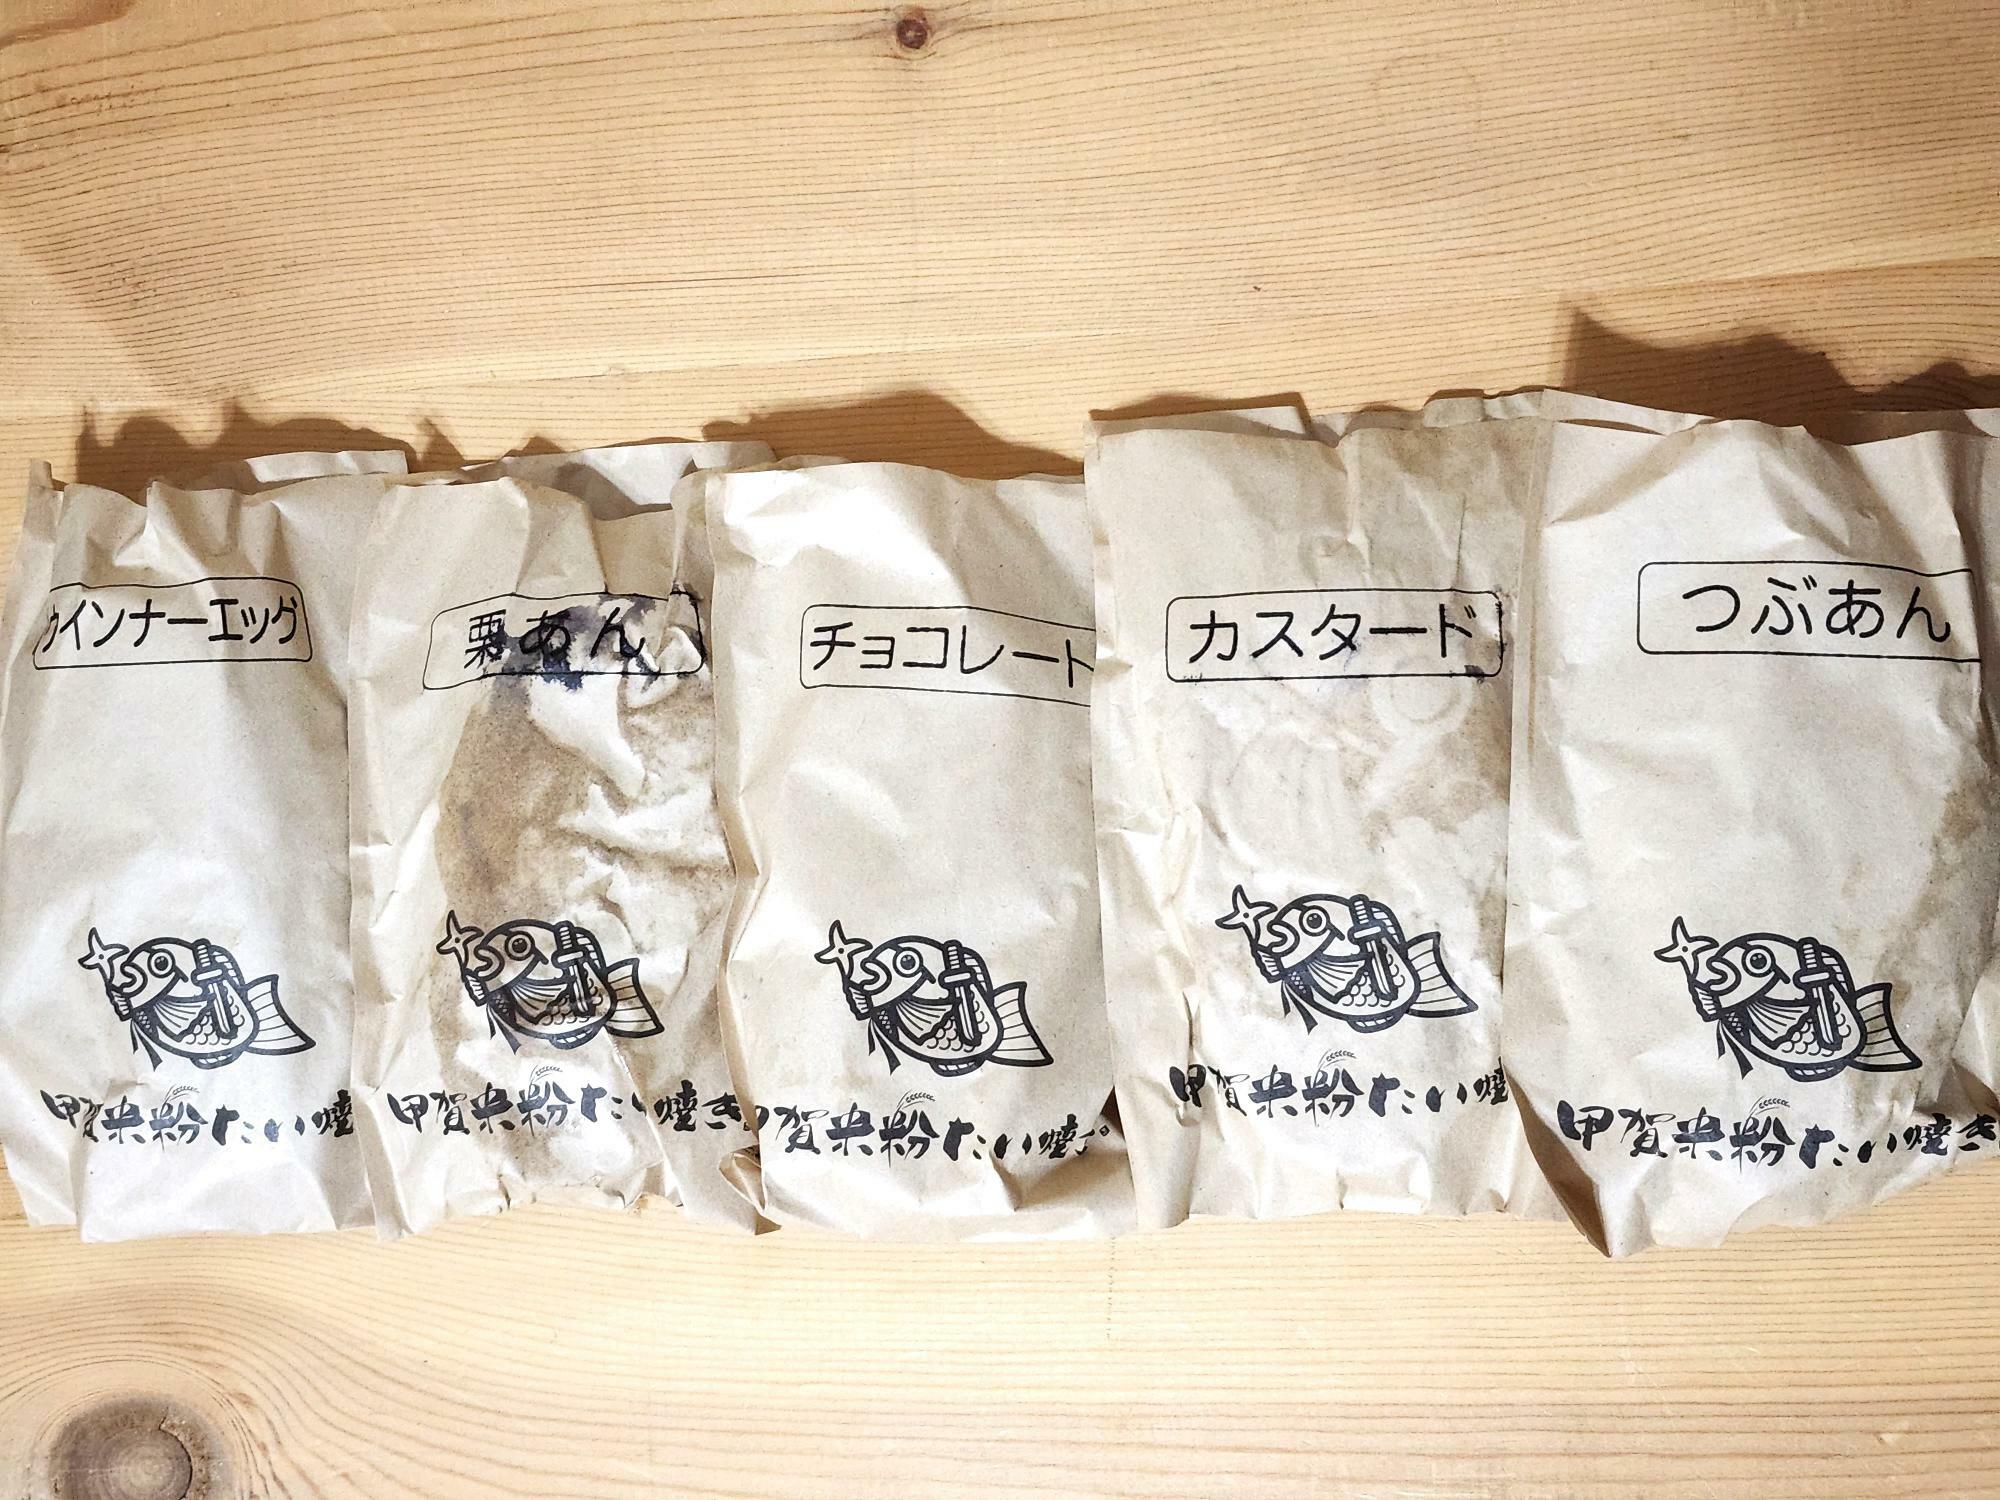 「甲賀米粉たい焼き徳島店」で購入した「たい焼き」。